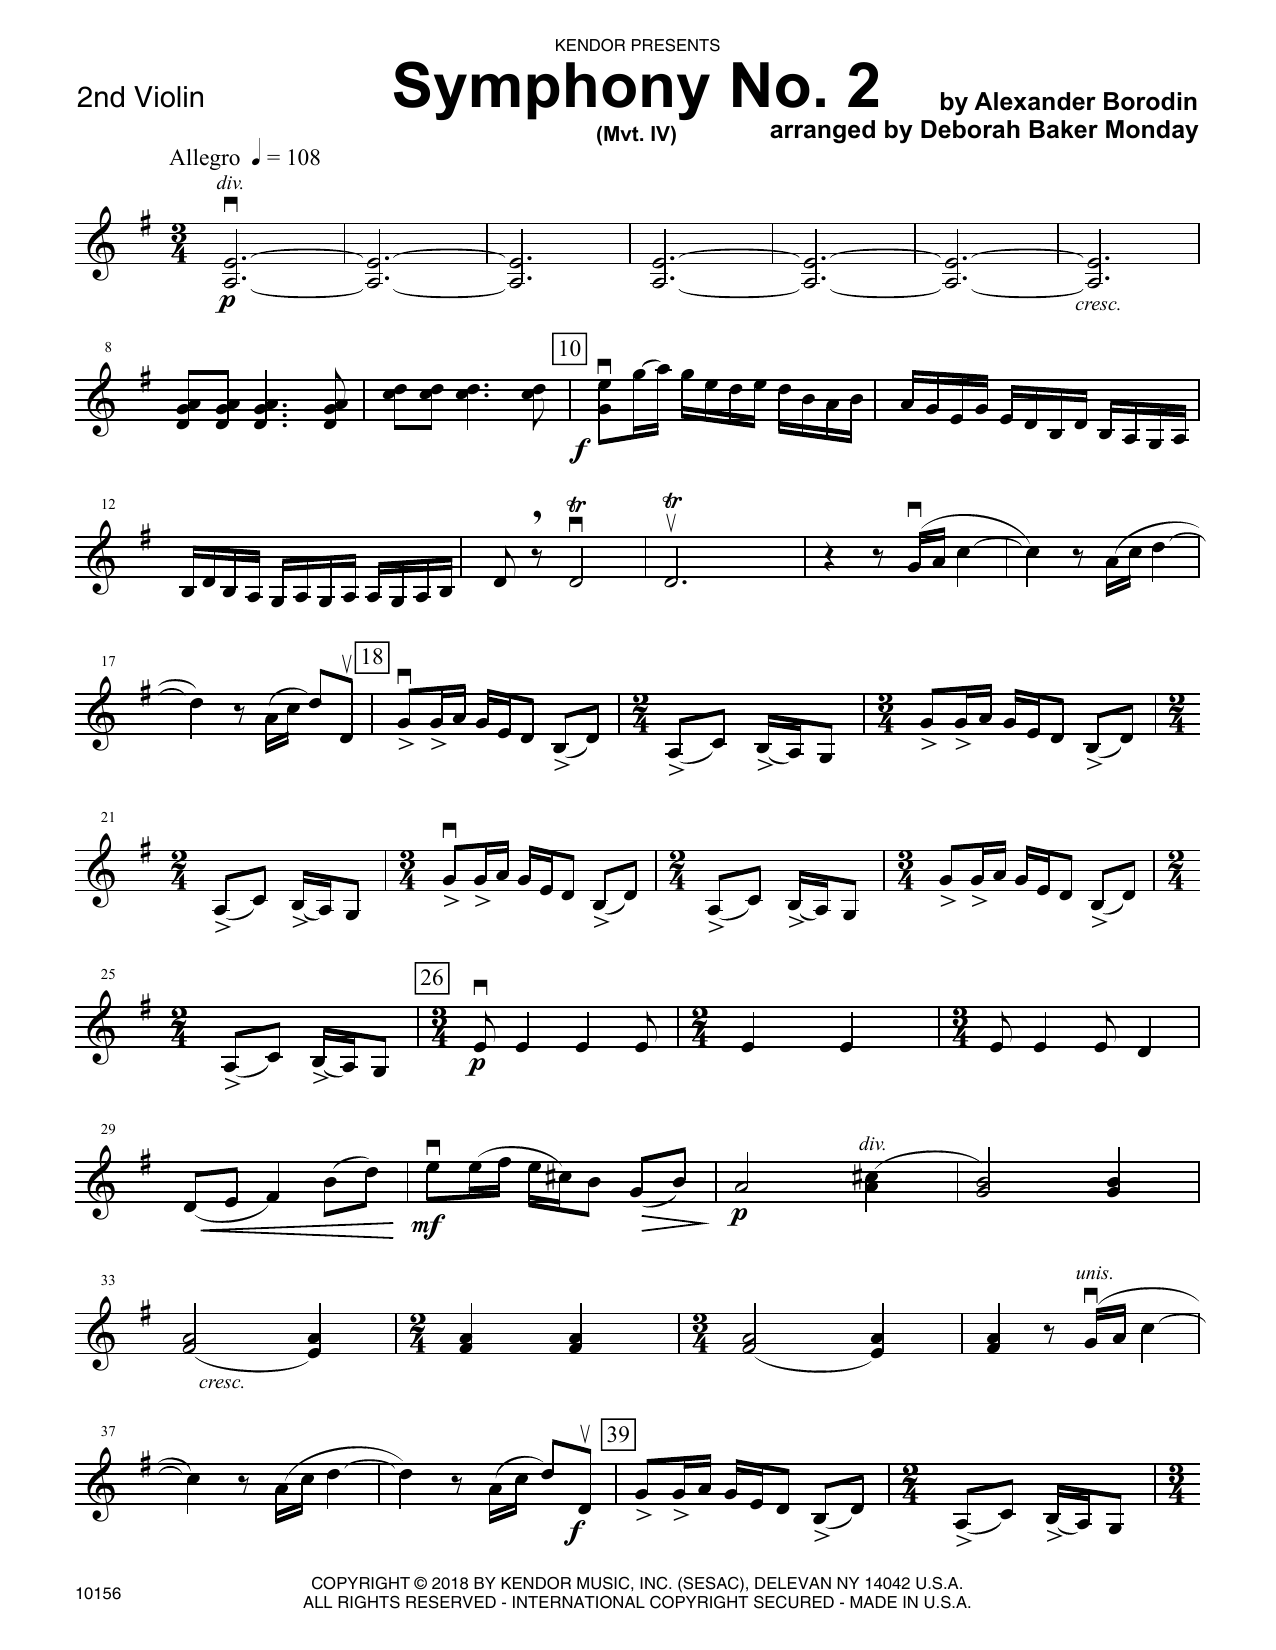 Download Deborah Baker Monday Symphony No. 2 (Mvt. IV) - 2nd Violin Sheet Music